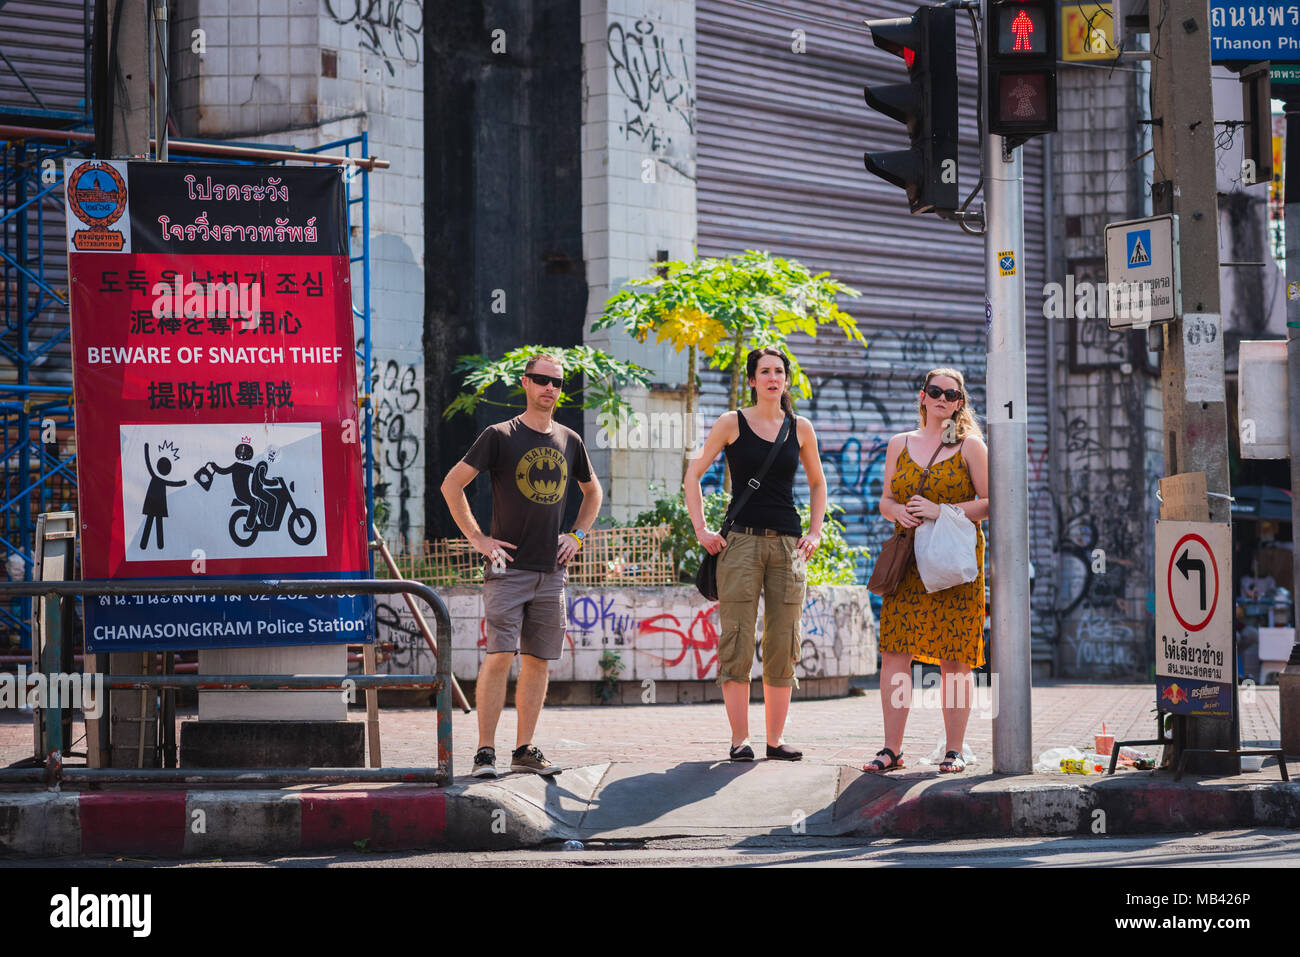 Tres mochileros situarse en el cruce de peatones tras las vacaciones de verano ropa sobre ellos. Hay una señal que advierte acerca de arrebatar los robos en Bangkok Foto de stock